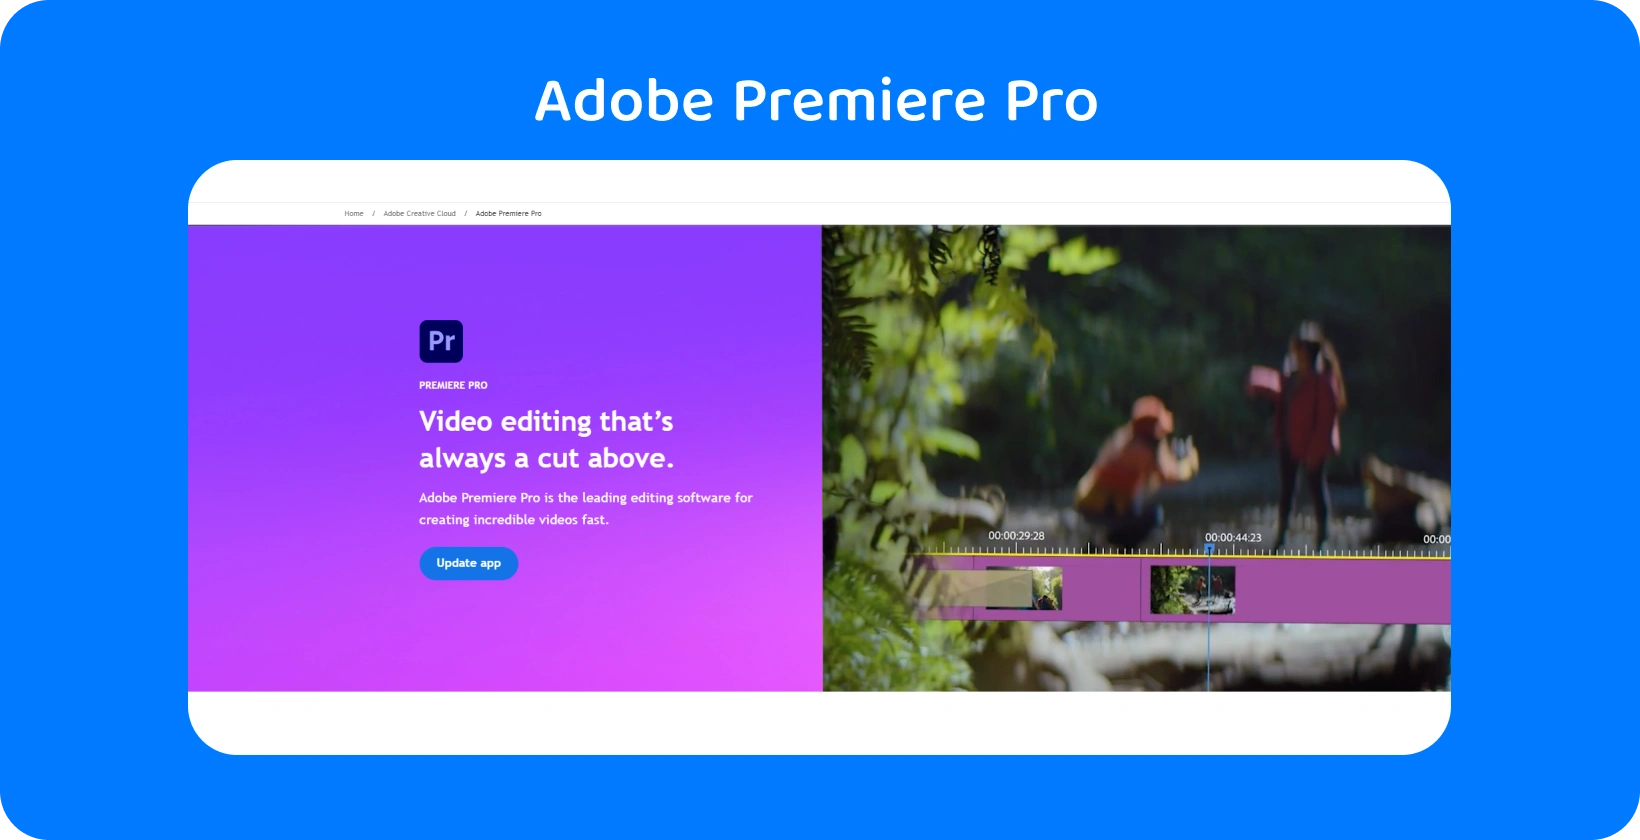 ממשק Adobe Premiere Pro המציג את יכולות עריכת הווידאו המתקדמות שלו, אידיאלי לעריכות מהירות ומדויקות.